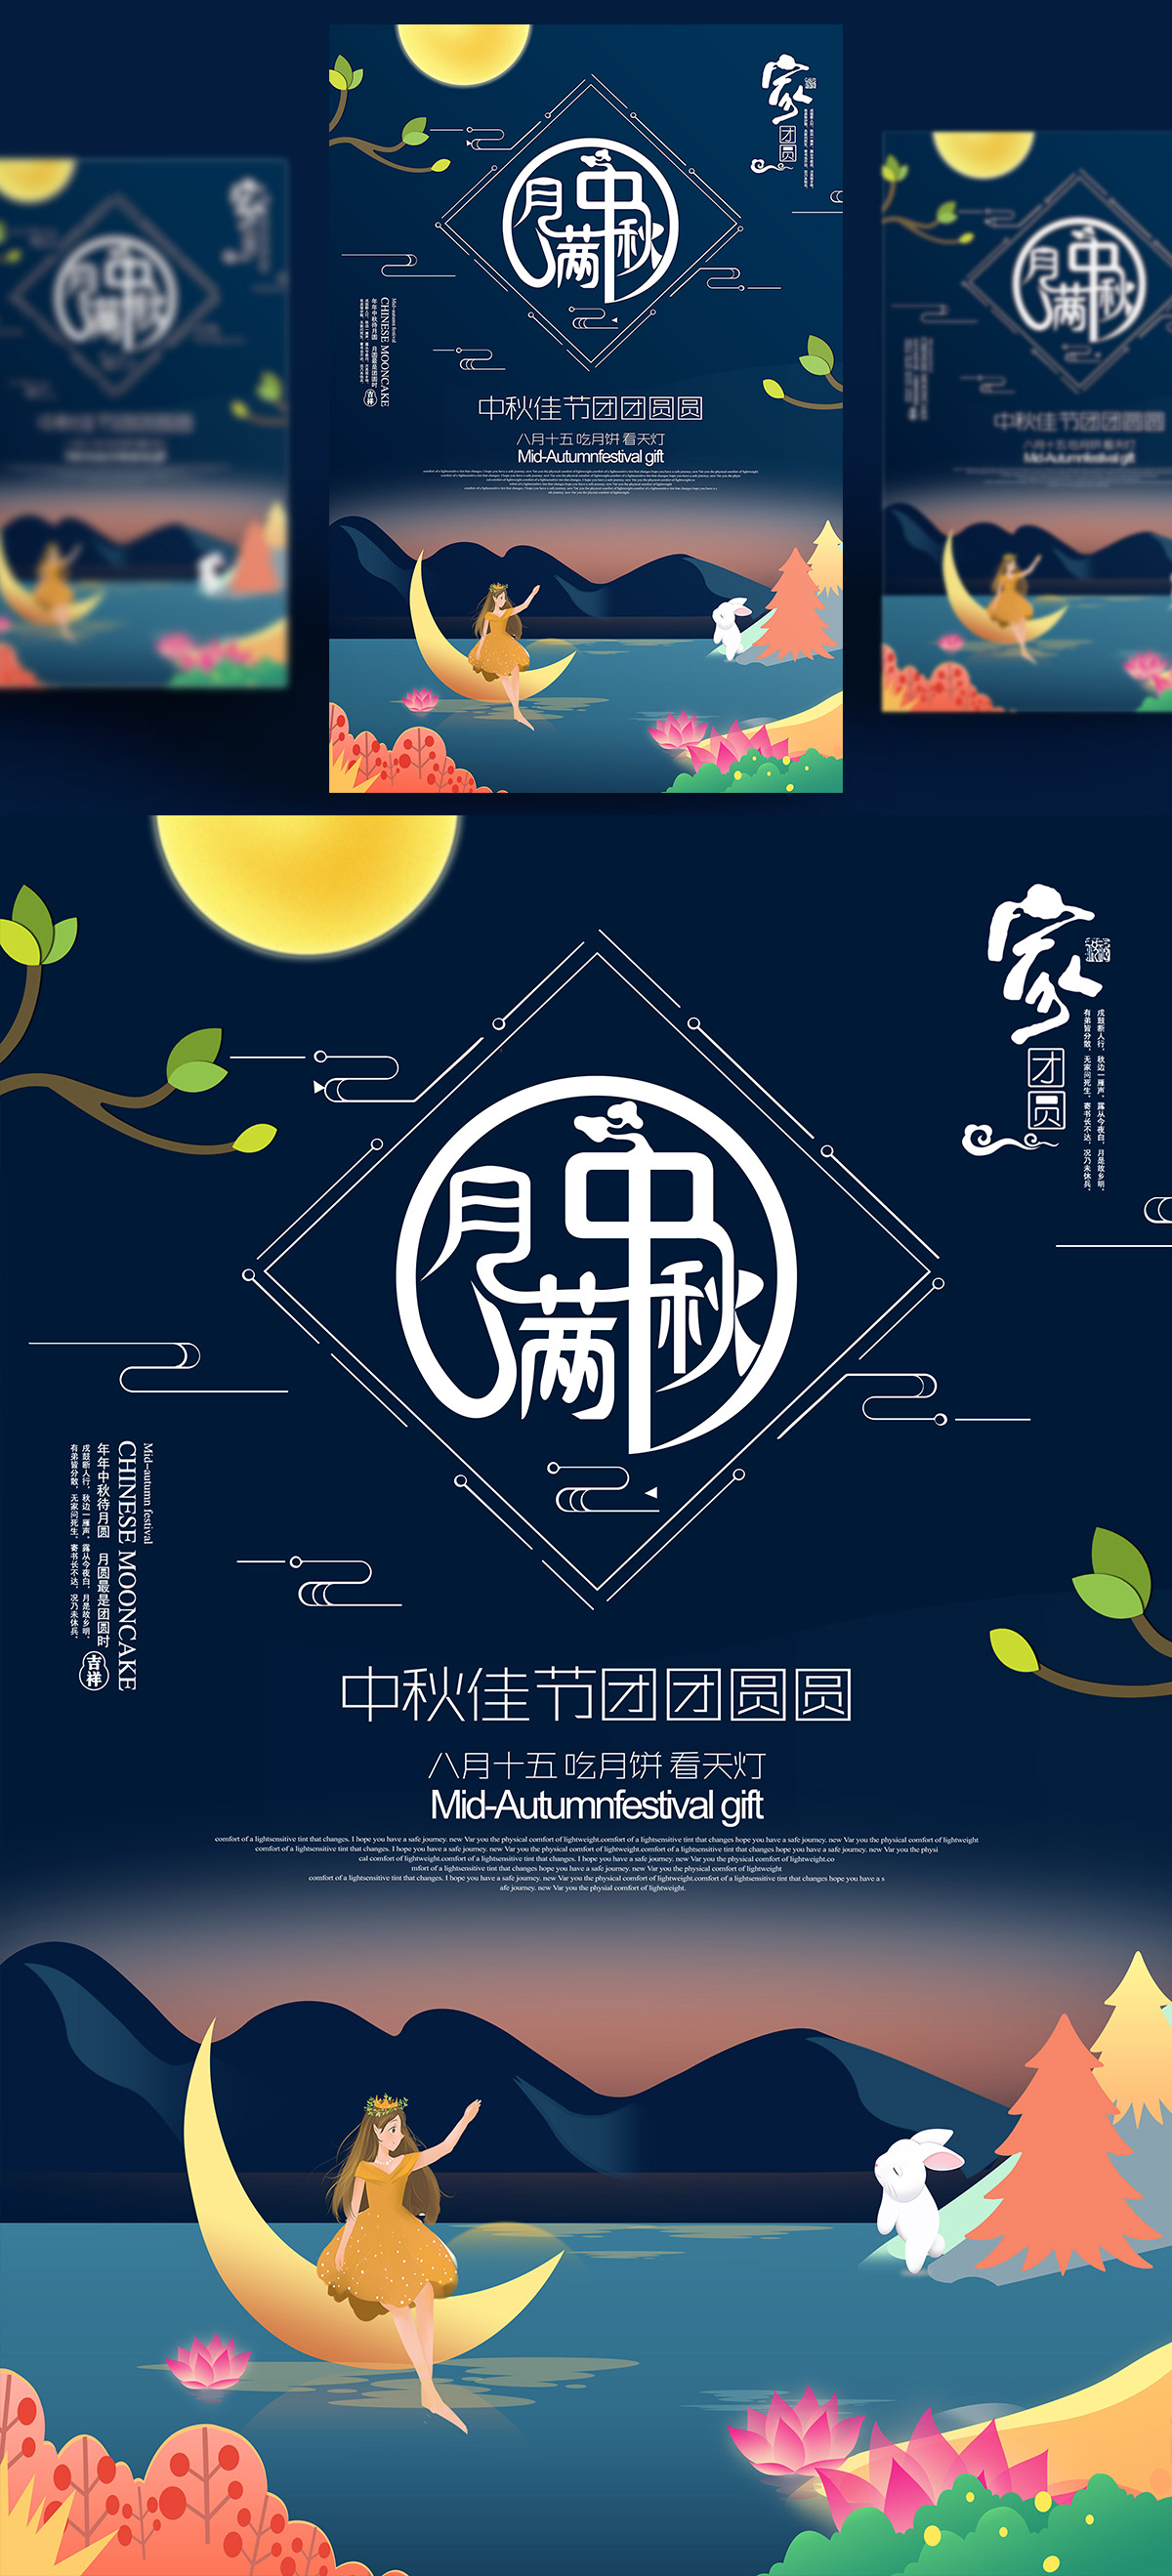 中国传统节日中秋节月亮节日团圆佳节月饼节PSD海报设计素材M